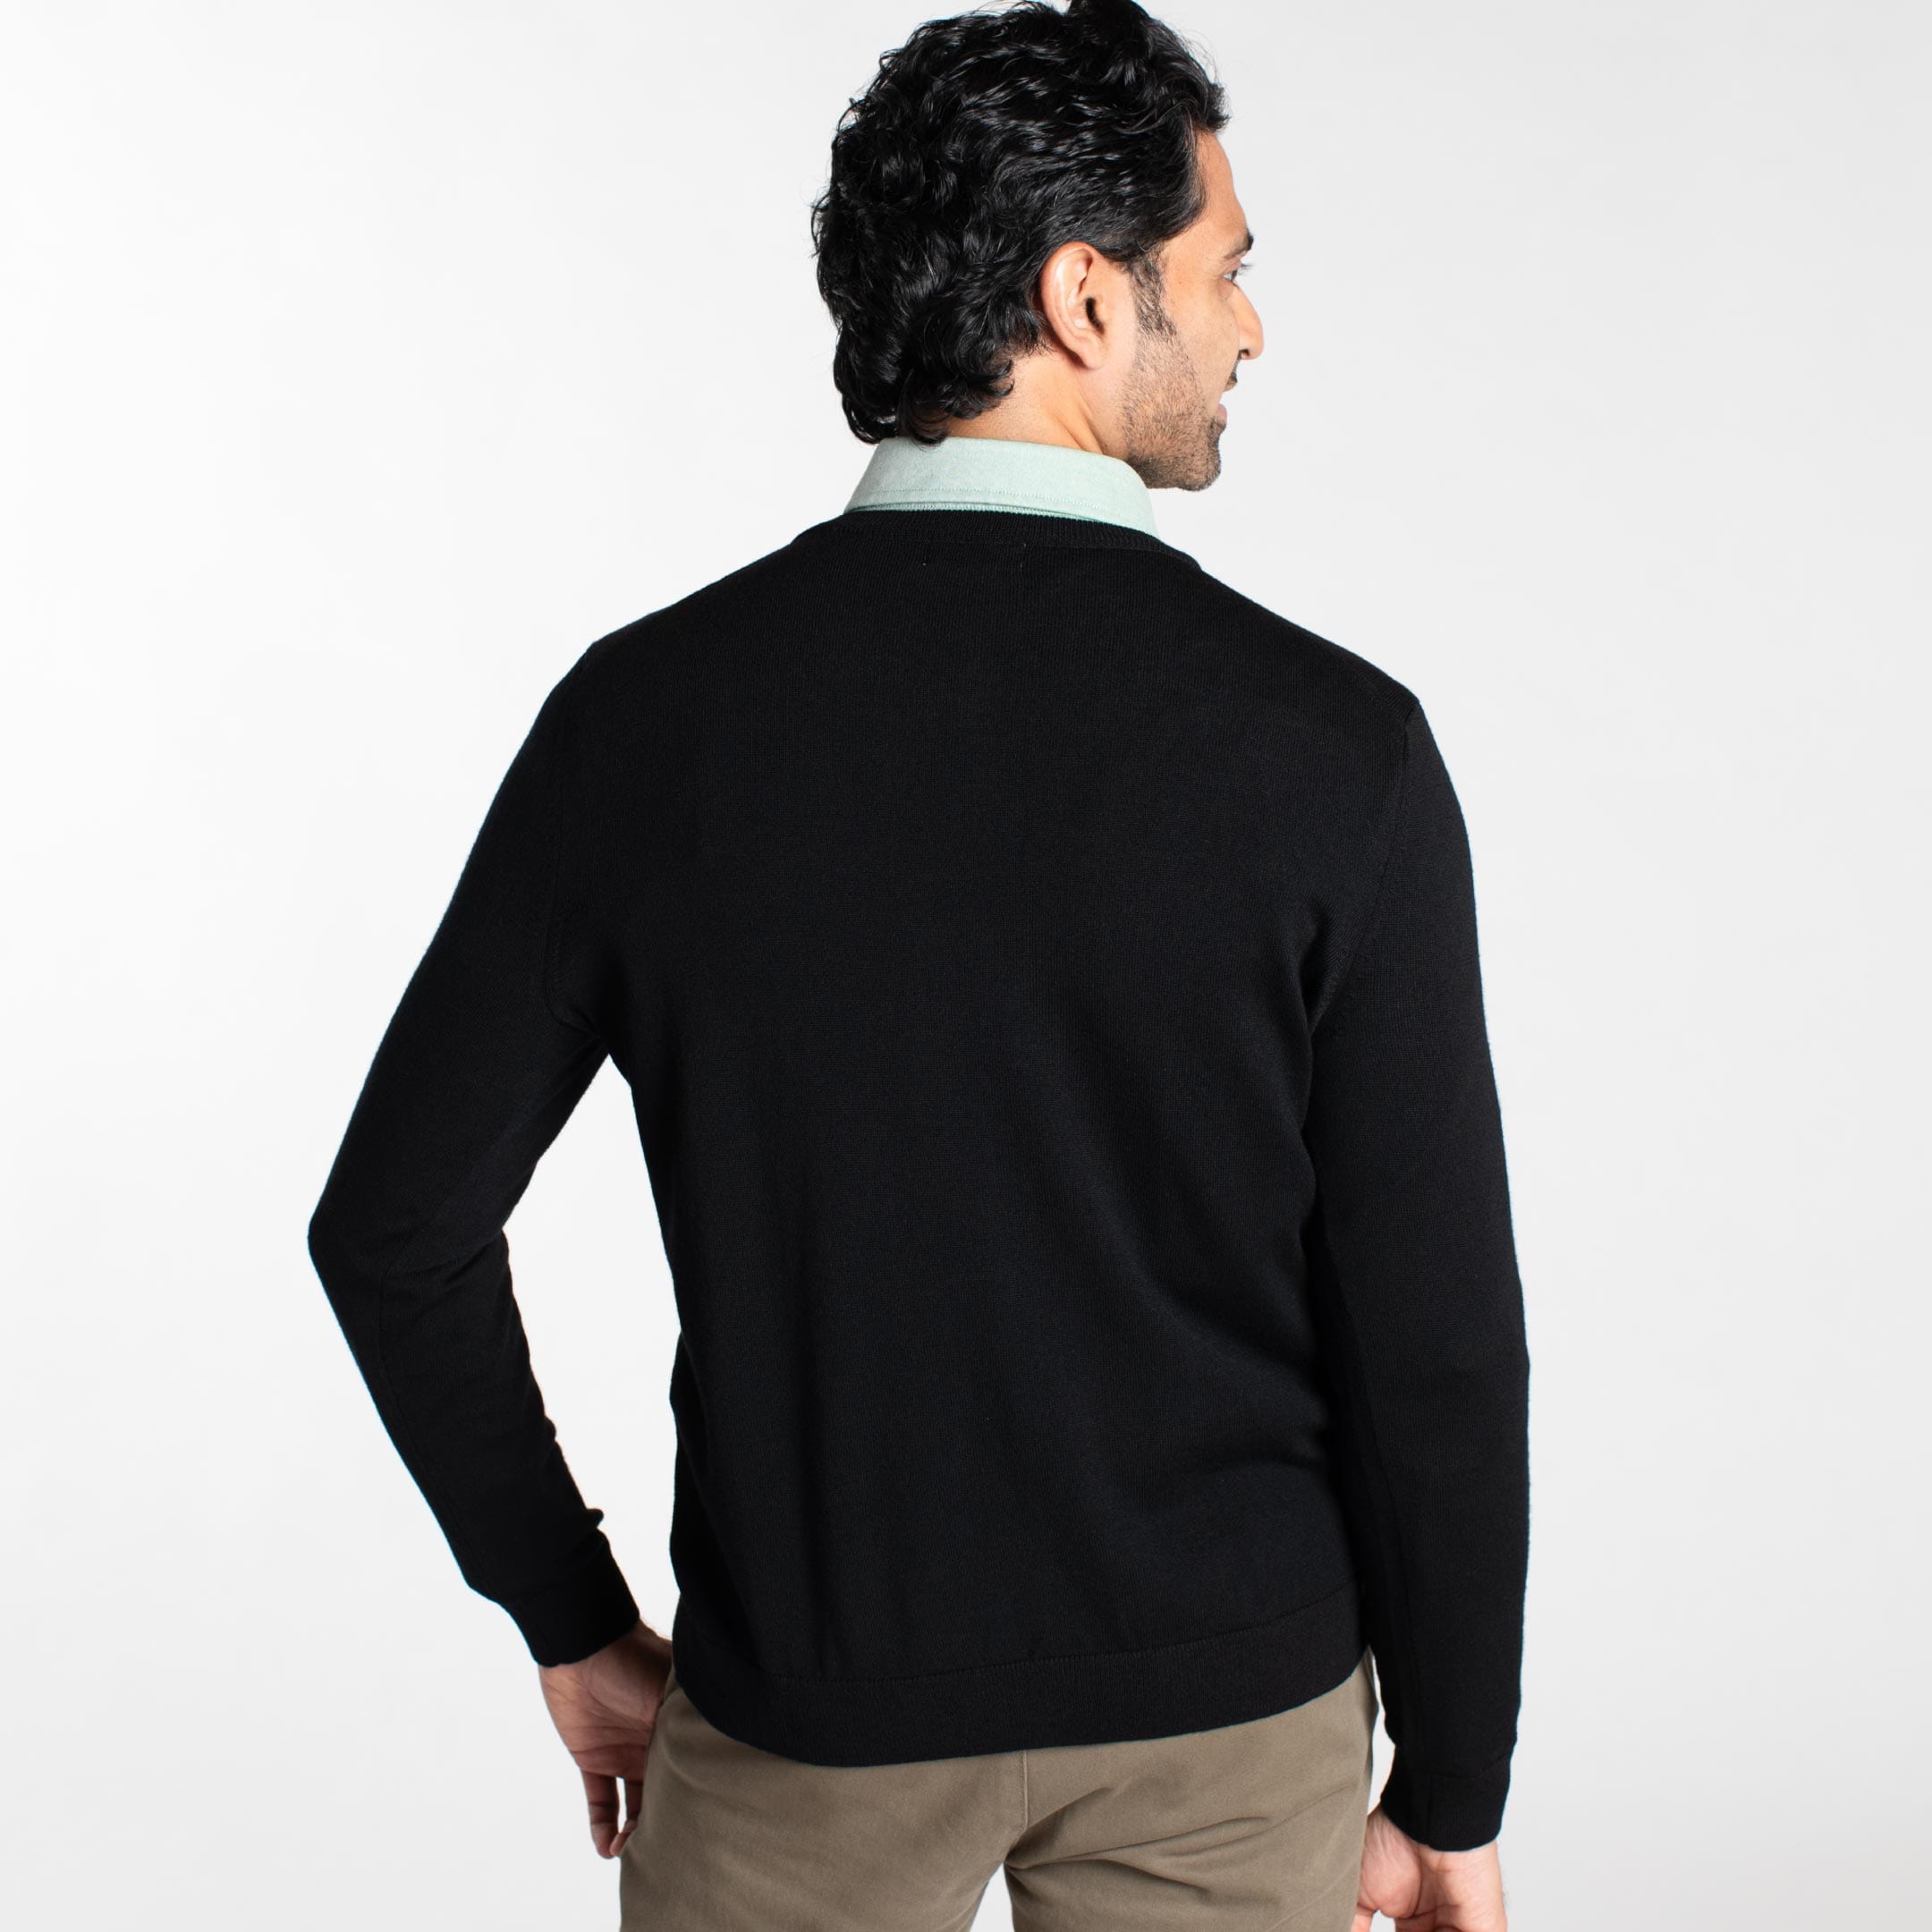 Buy Black Merino V-Neck Sweater for Short Men | Ash & Erie   Merino Wool Sweater